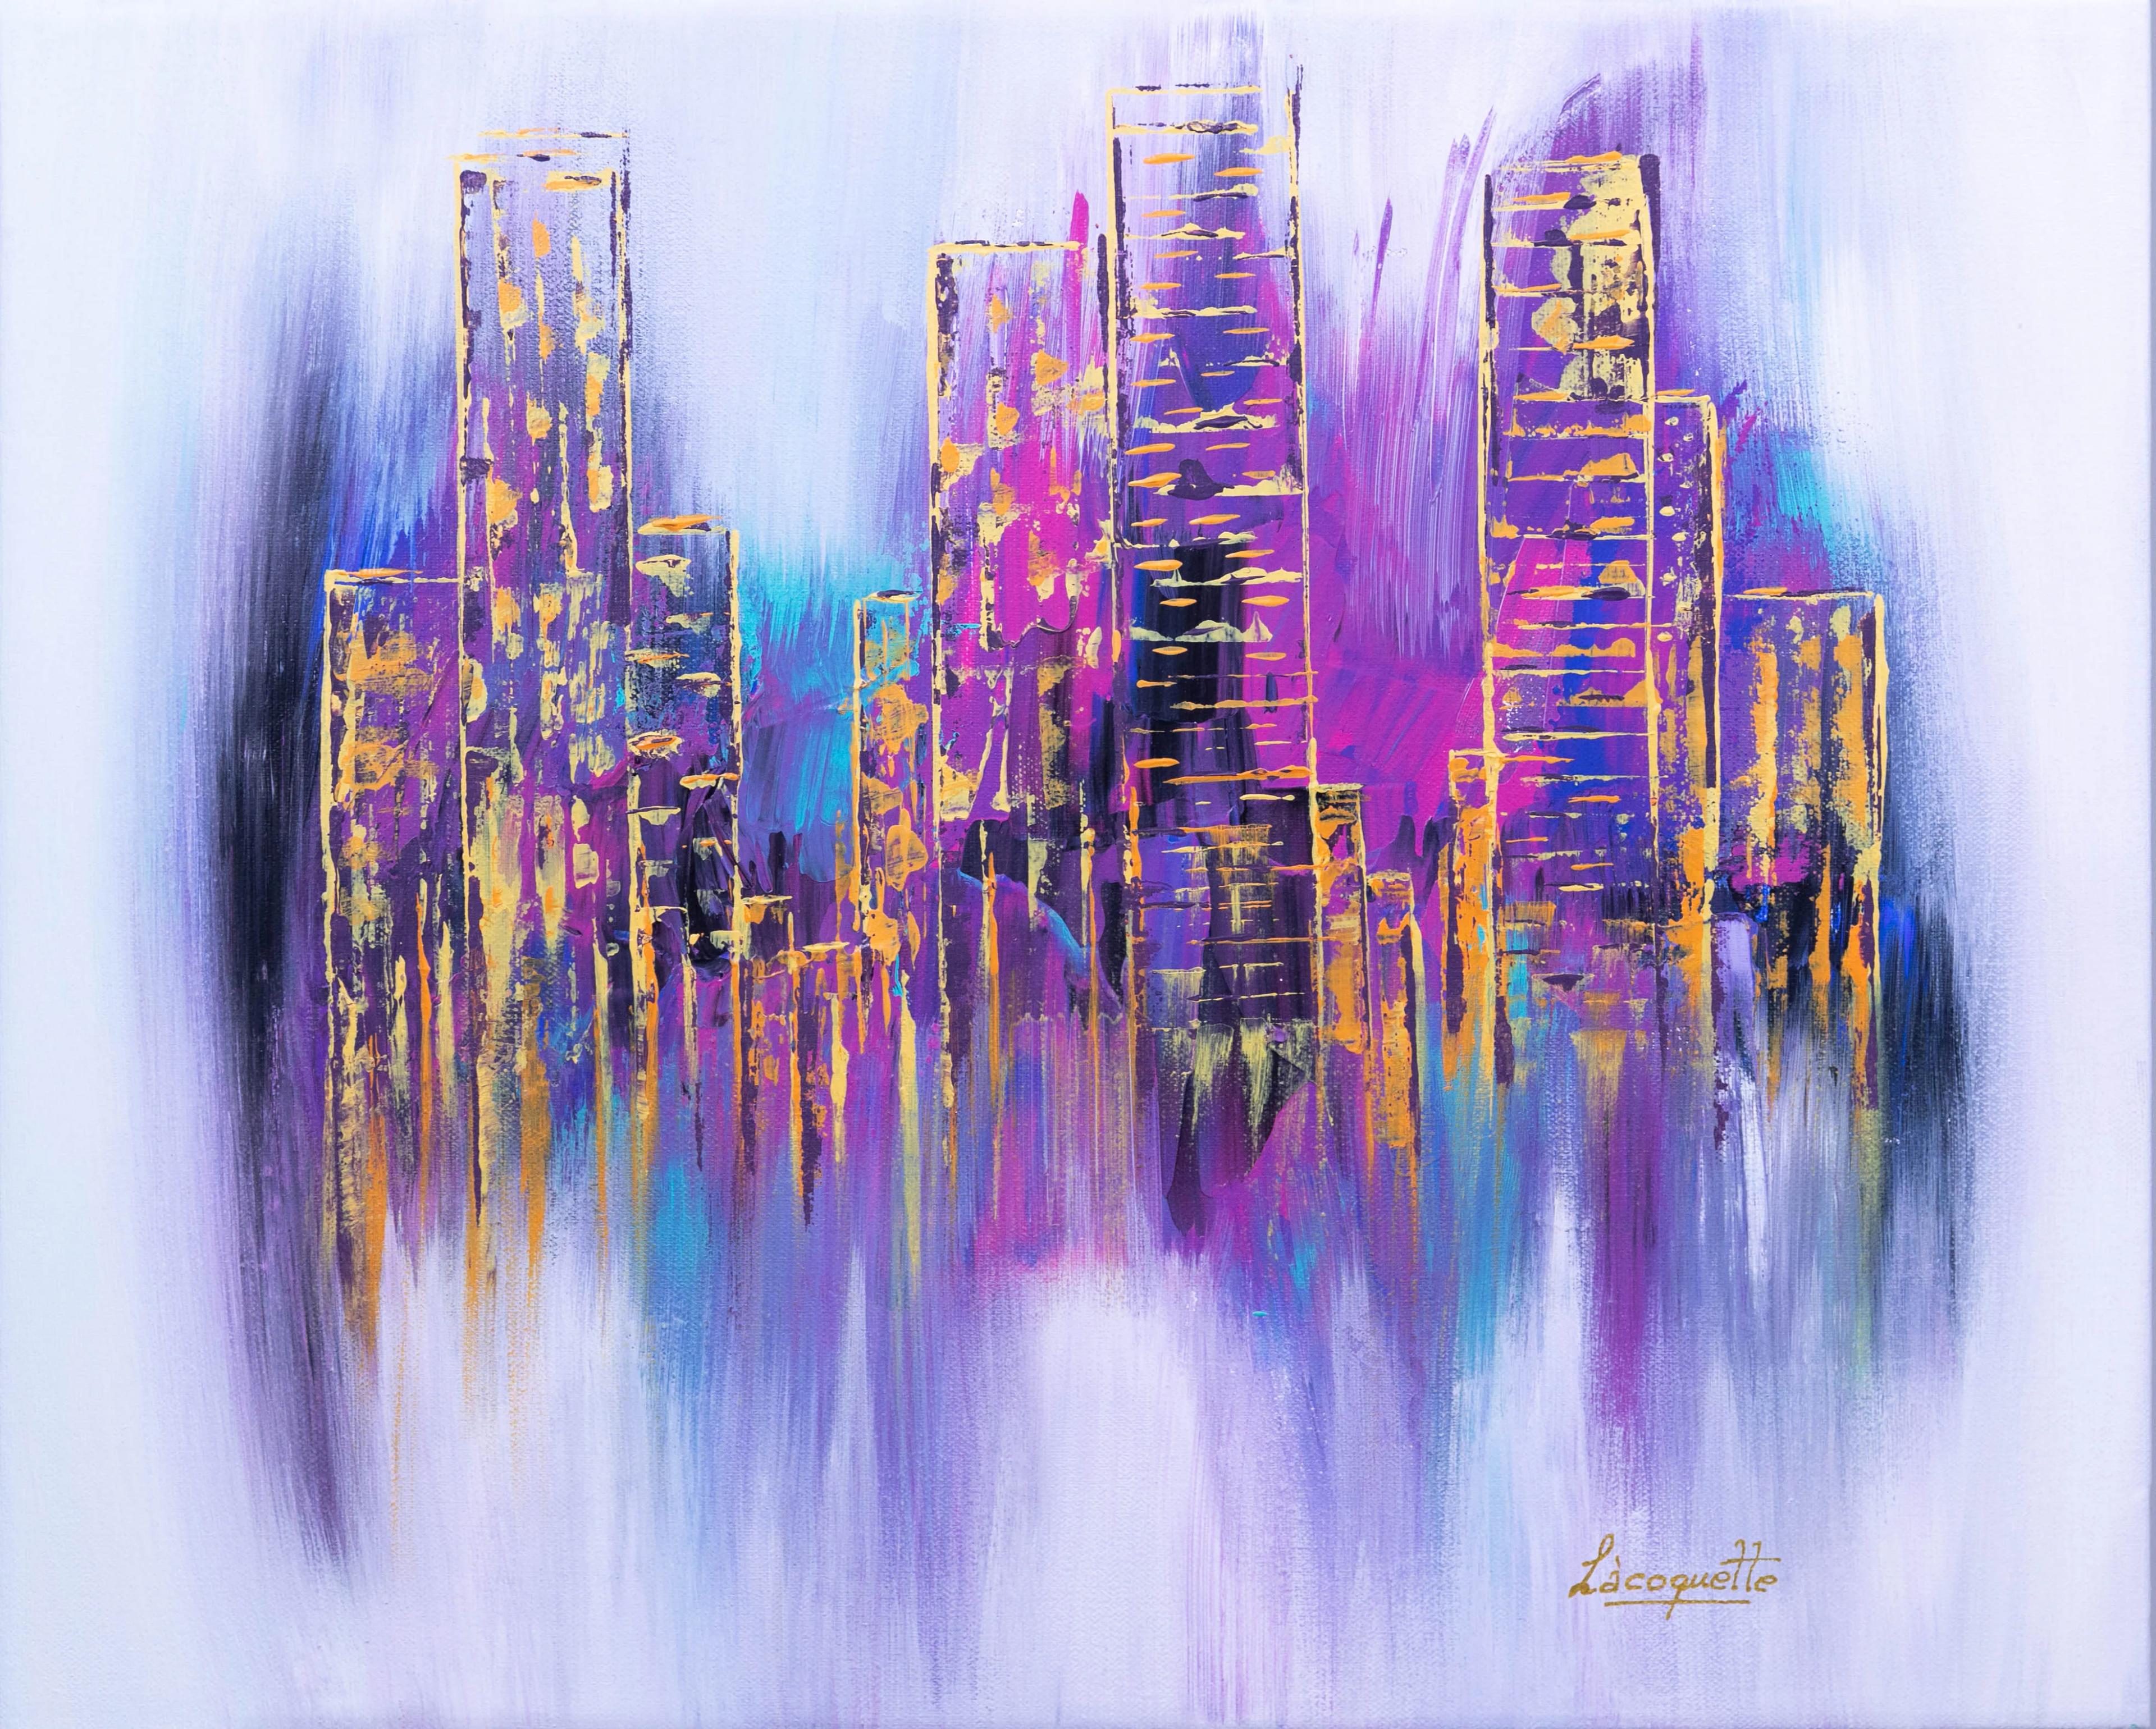 La ciudad tras el cristal - Crazy Art - Retrato de ciudad idílica acrílico (4)-2.jpg